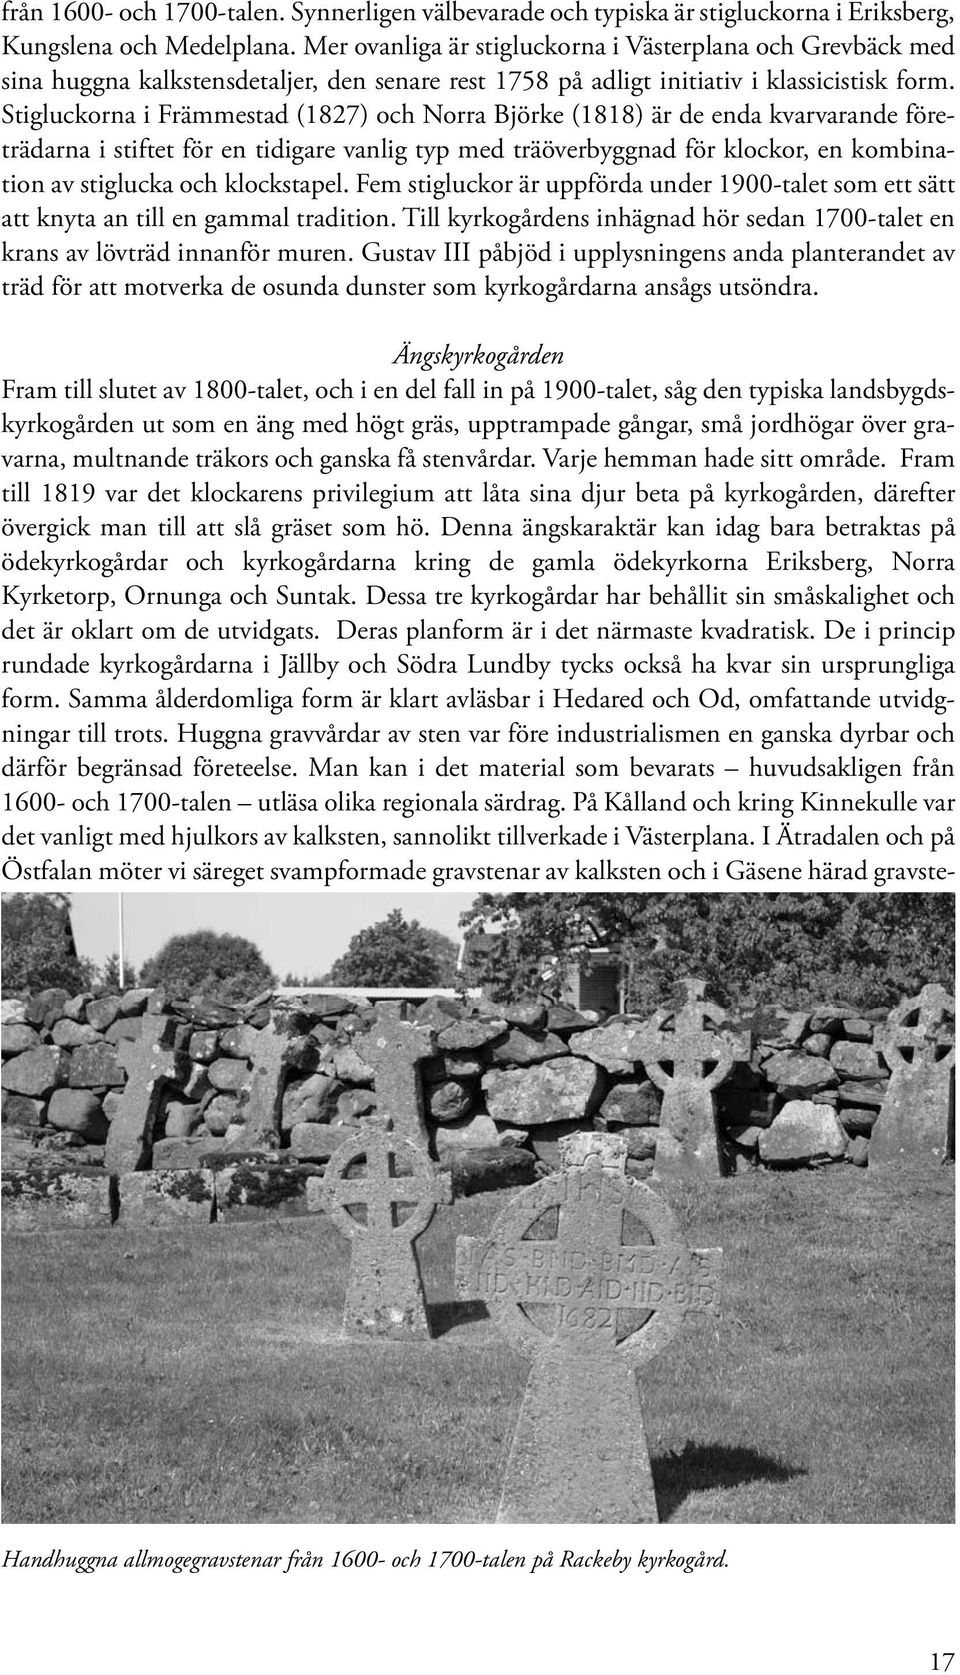 Stigluckorna i Främmestad (1827) och Norra Björke (1818) är de enda kvarvarande företrädarna i stiftet för en tidigare vanlig typ med träöverbyggnad för klockor, en kombination av stiglucka och